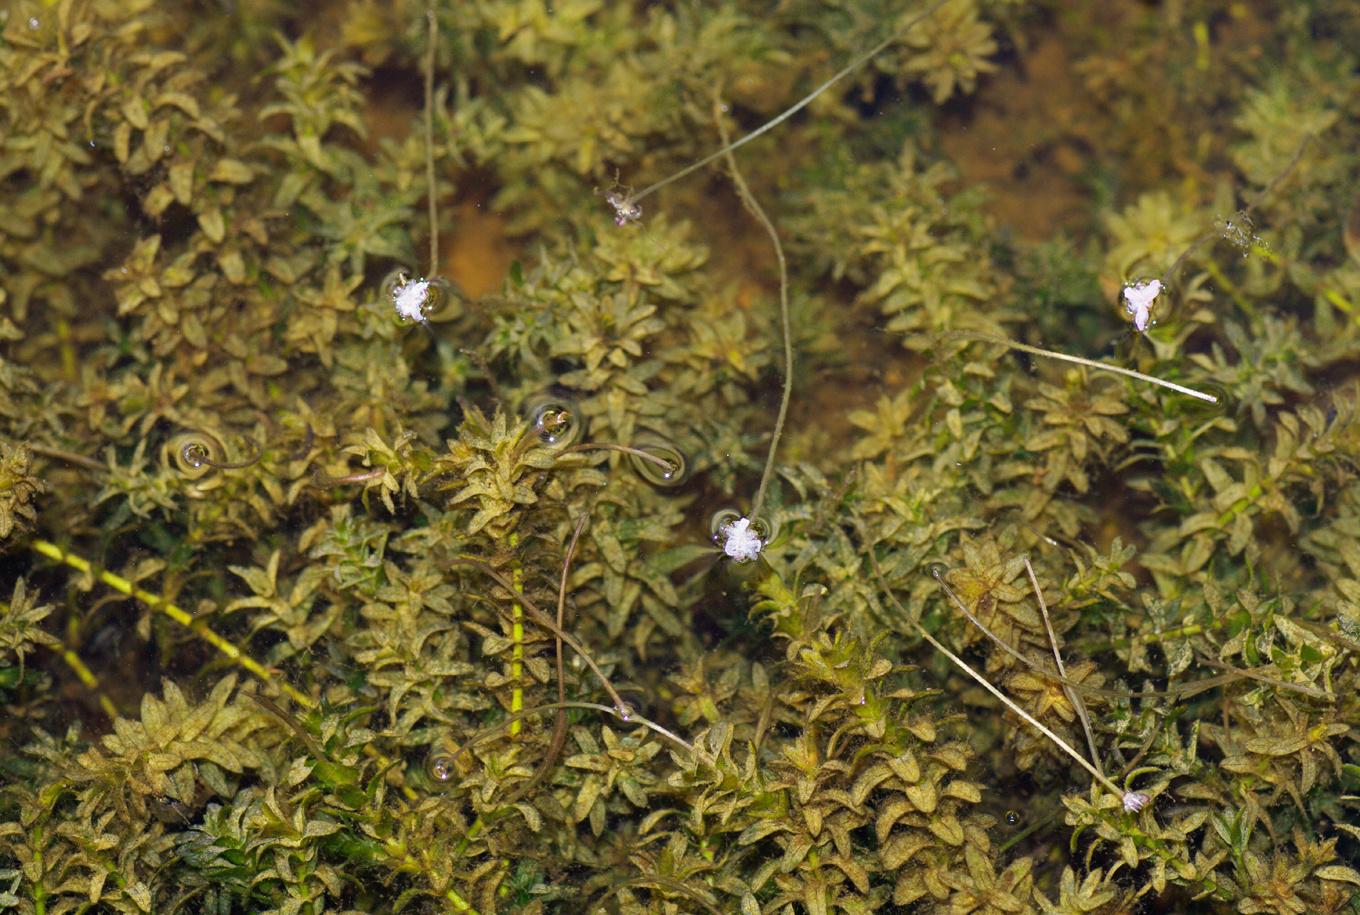 Blommande vattenpest (Elodea canadensis) i ett grund vattendrag. Foto: Christian Fischer / CC BY-SA 3.0